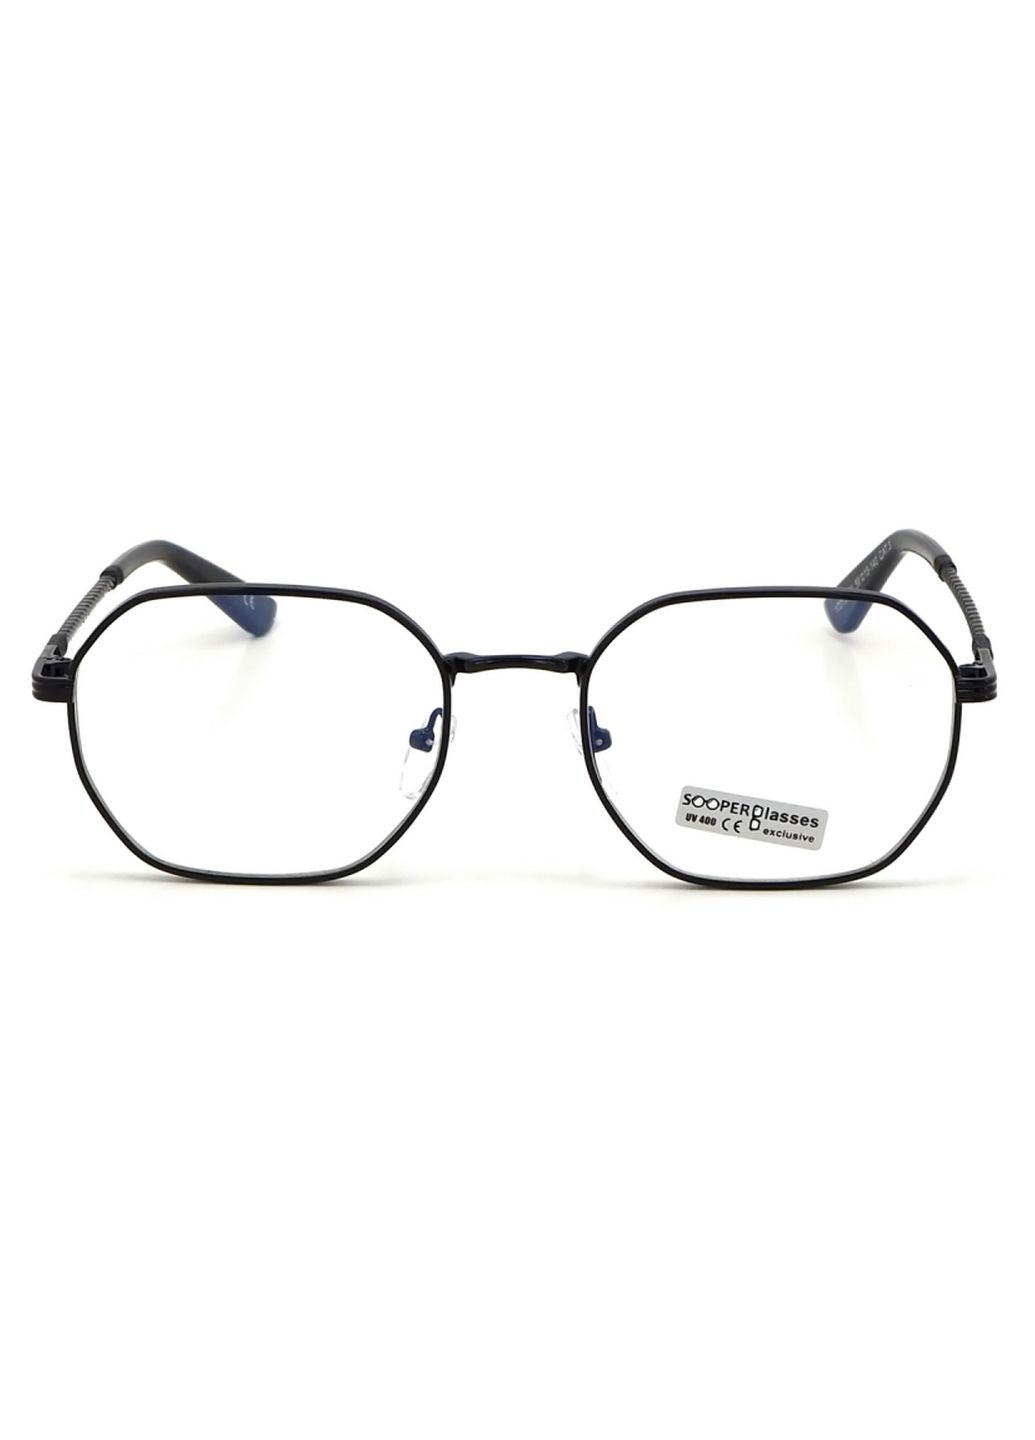 Купить Очки для работы за компьютером Cooper Glasses в черной оправе 124009 в интернет-магазине